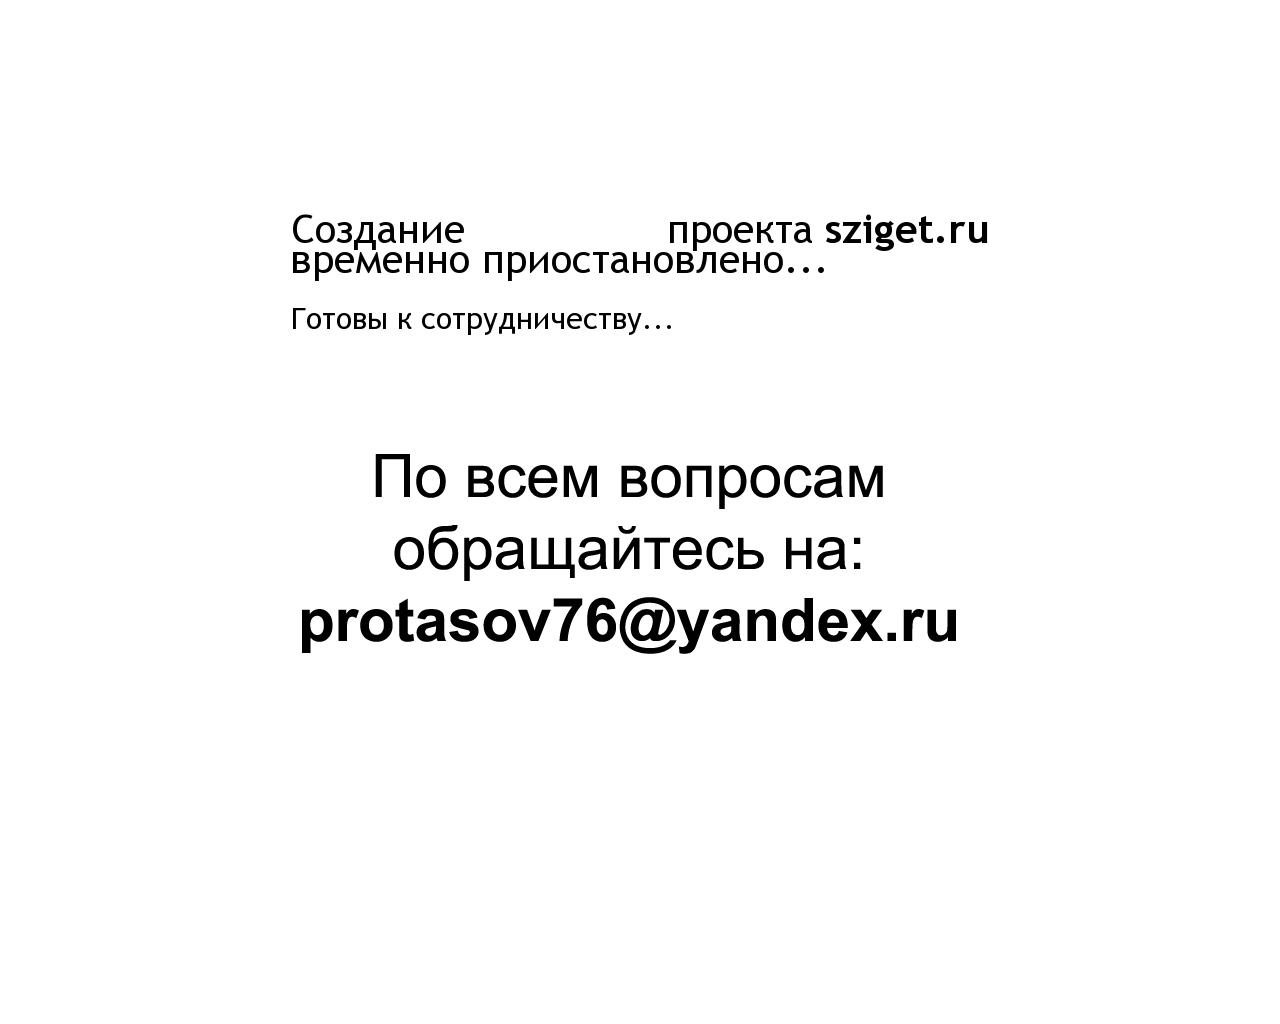 Изображение сайта sziget.ru в разрешении 1280x1024